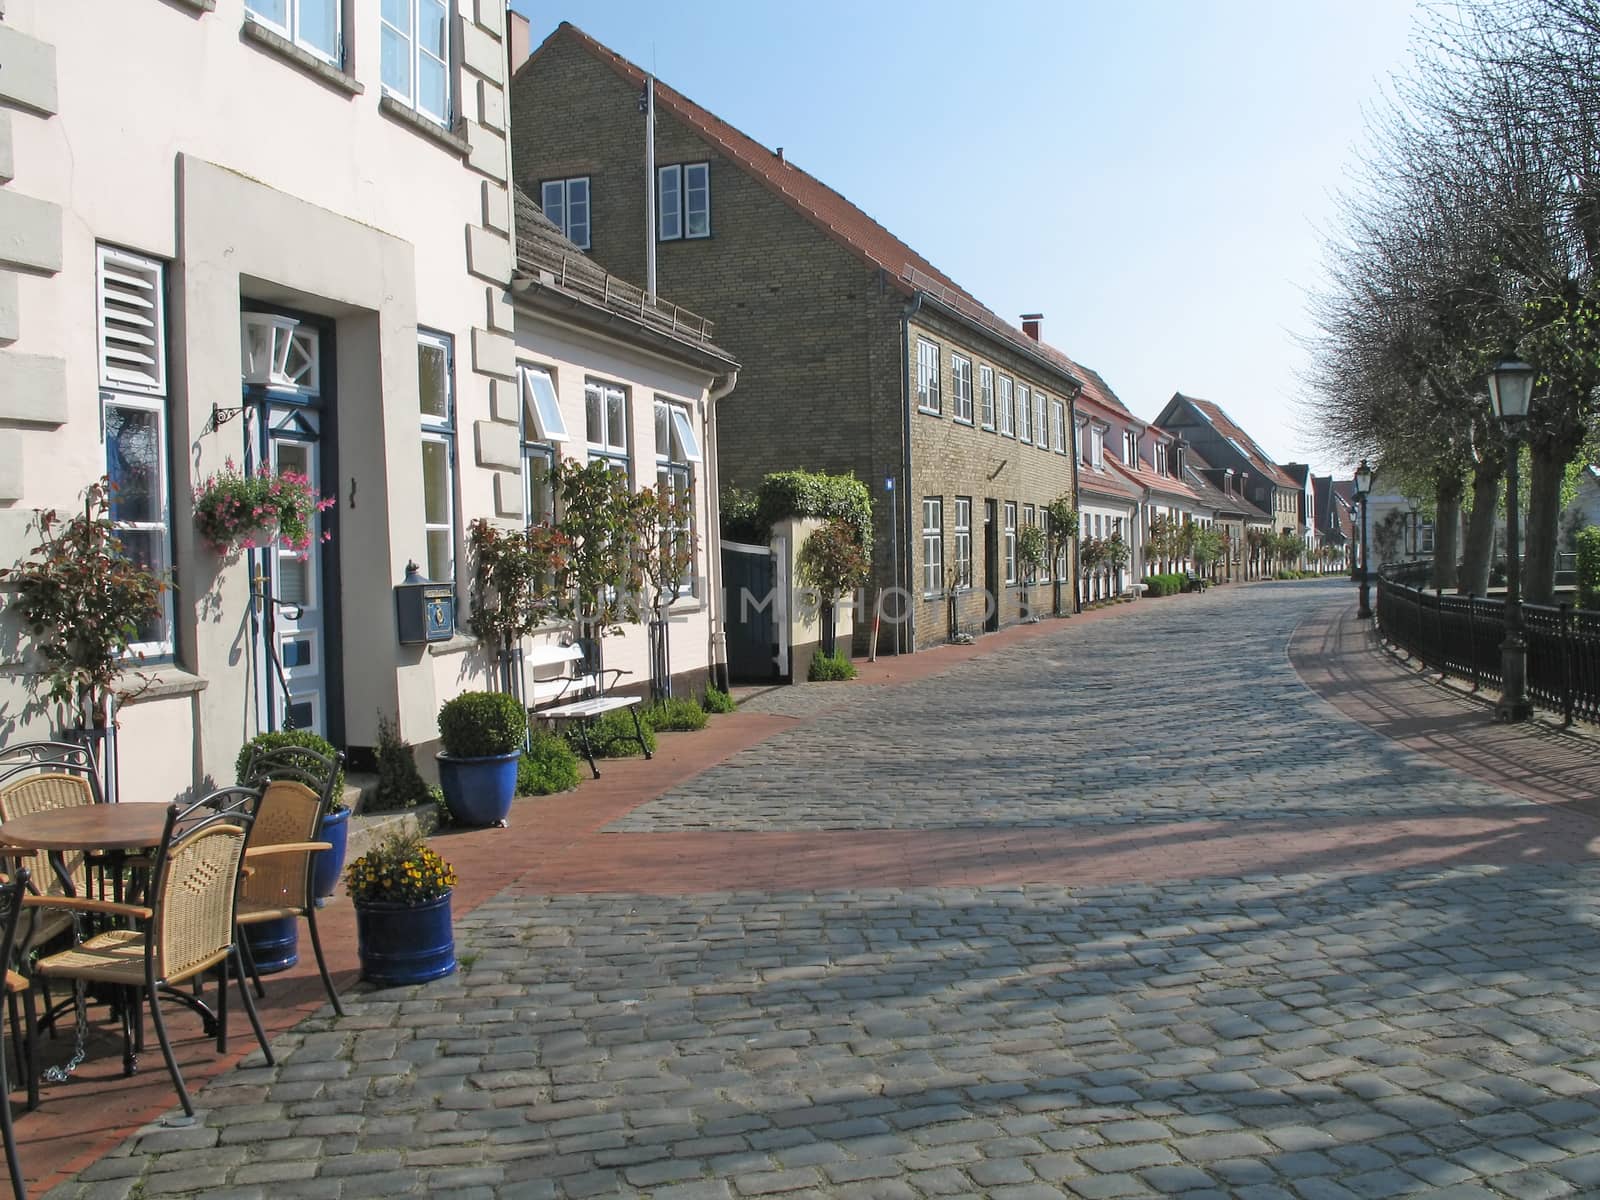 Holm, district of Schleswig by SchneiderStockImages